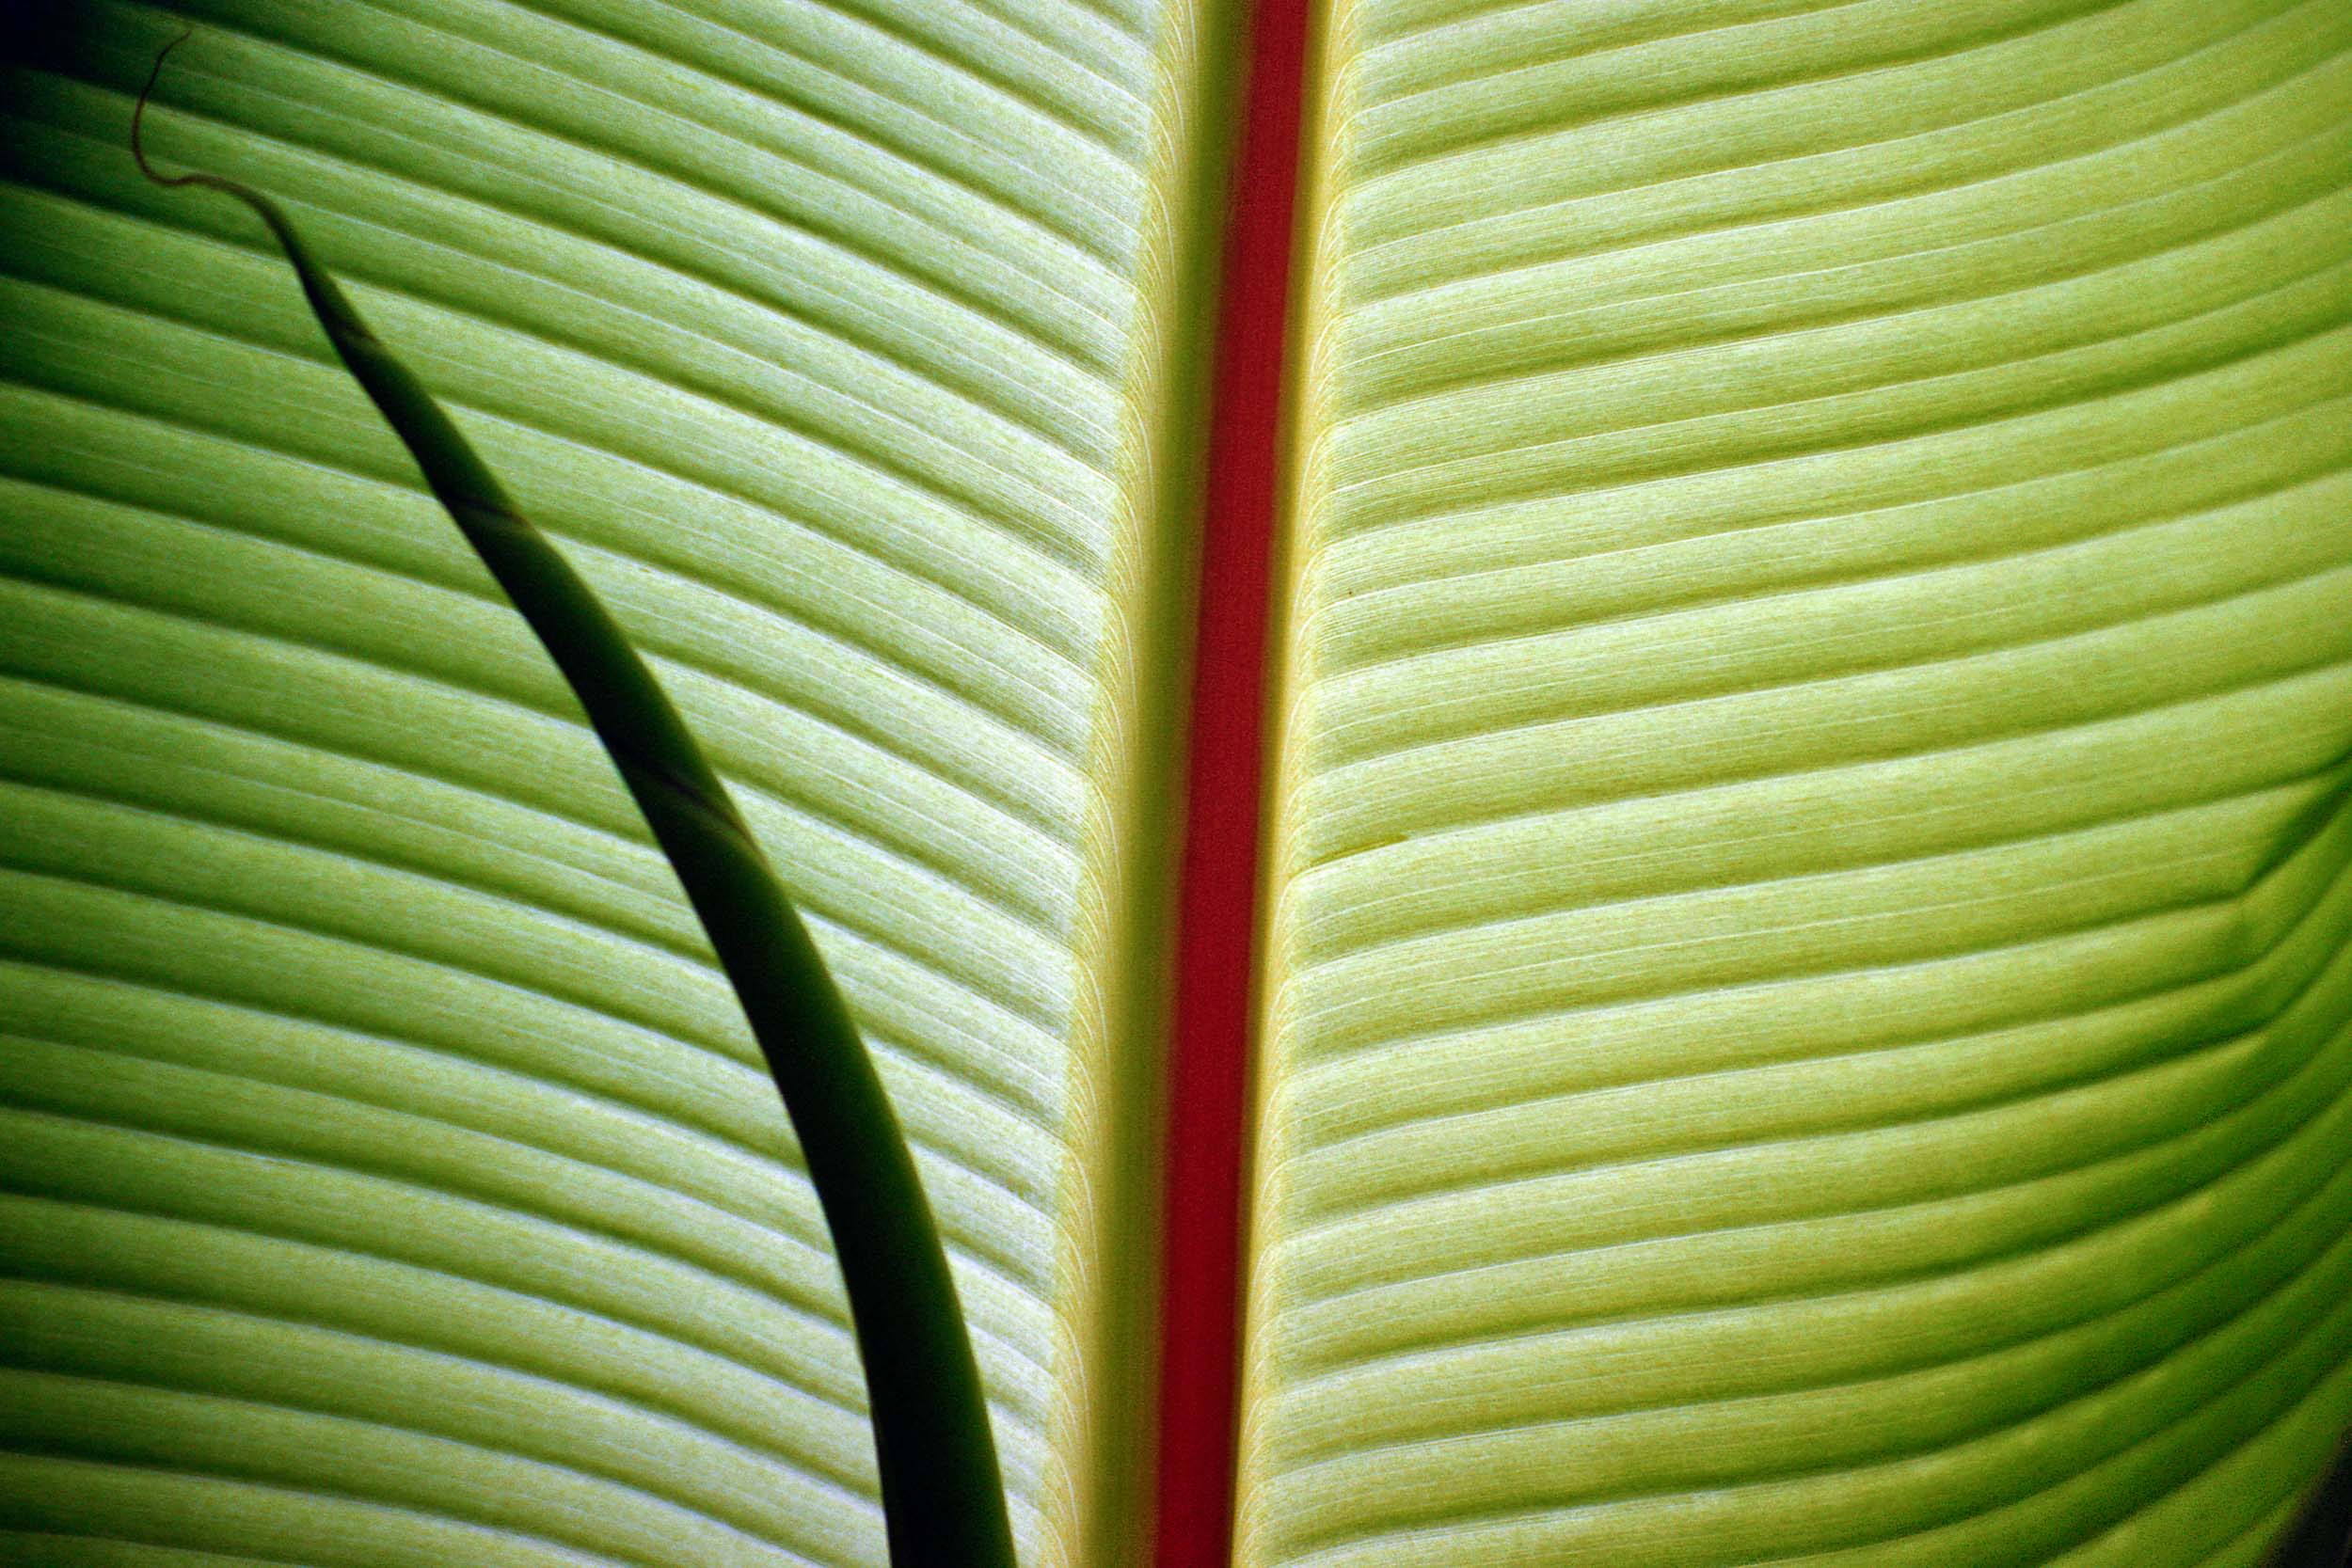  Leaf Detail Santa Barbara, CA 2001 